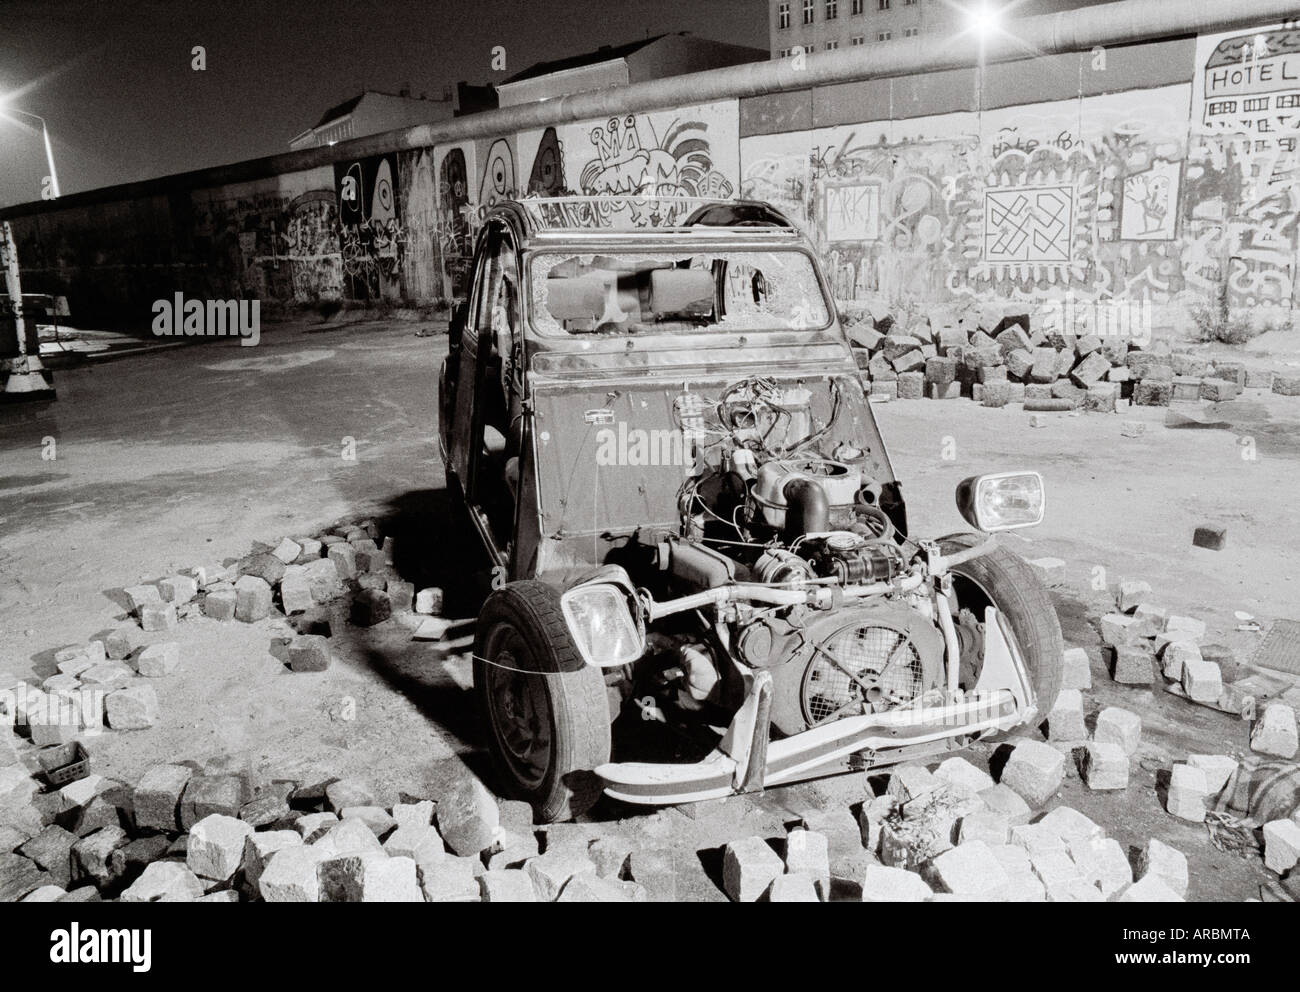 Guerre Froide nuit Reportage Photographie - une voiture accidentée au mur de Berlin à kreuzberg Berlin-ouest de l'Allemagne de l'ouest de l'Europe. Le photojournalisme documentaire Banque D'Images